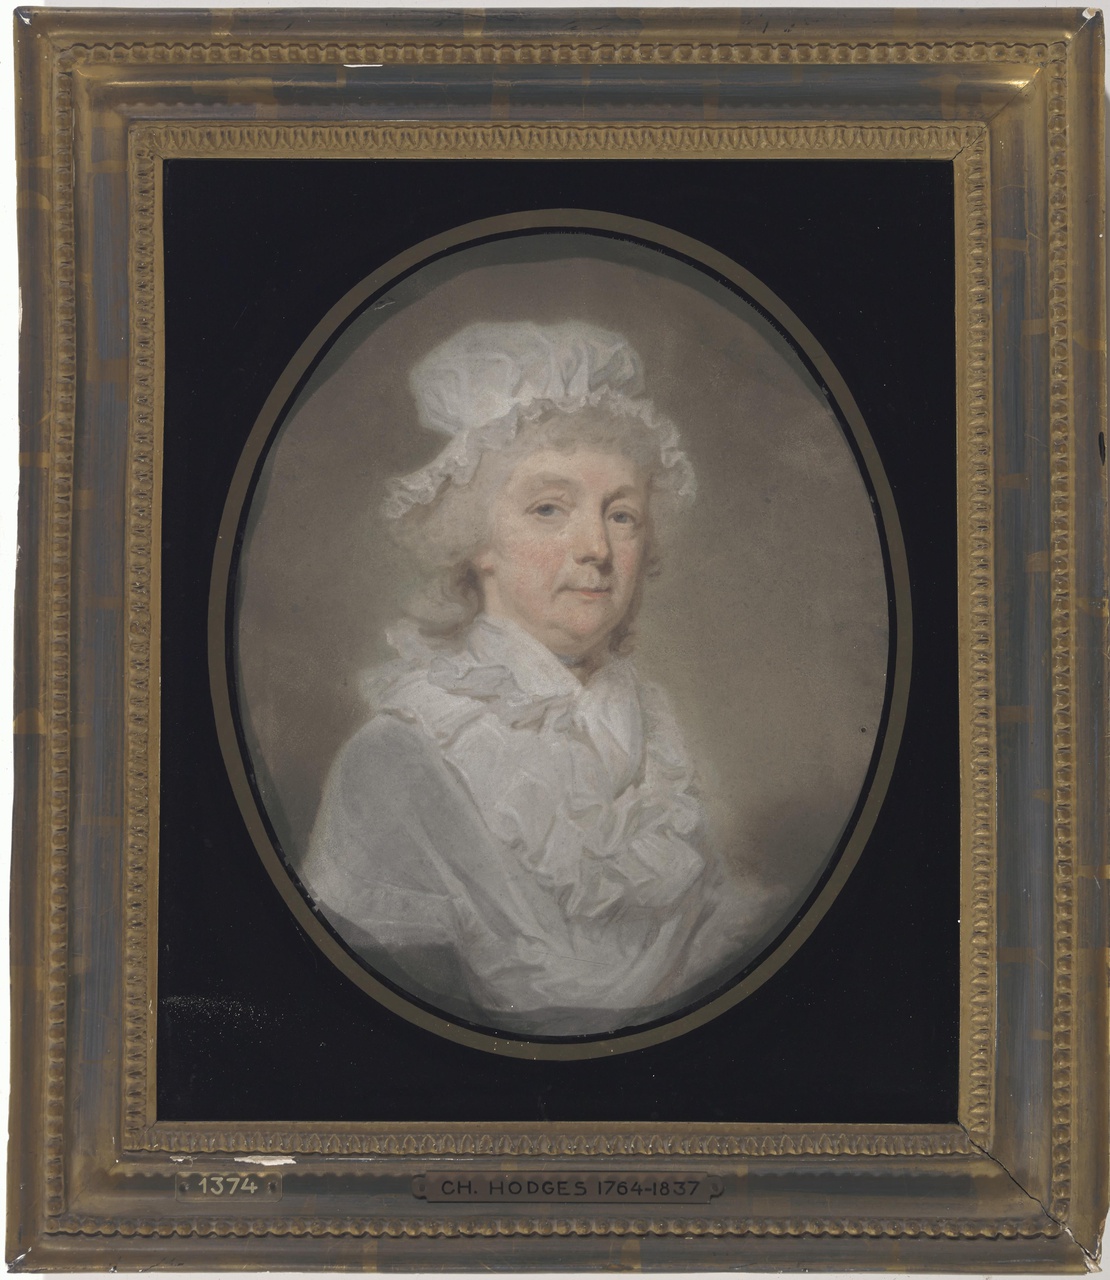 Portret van een vrouw uit de familie Brondgeest